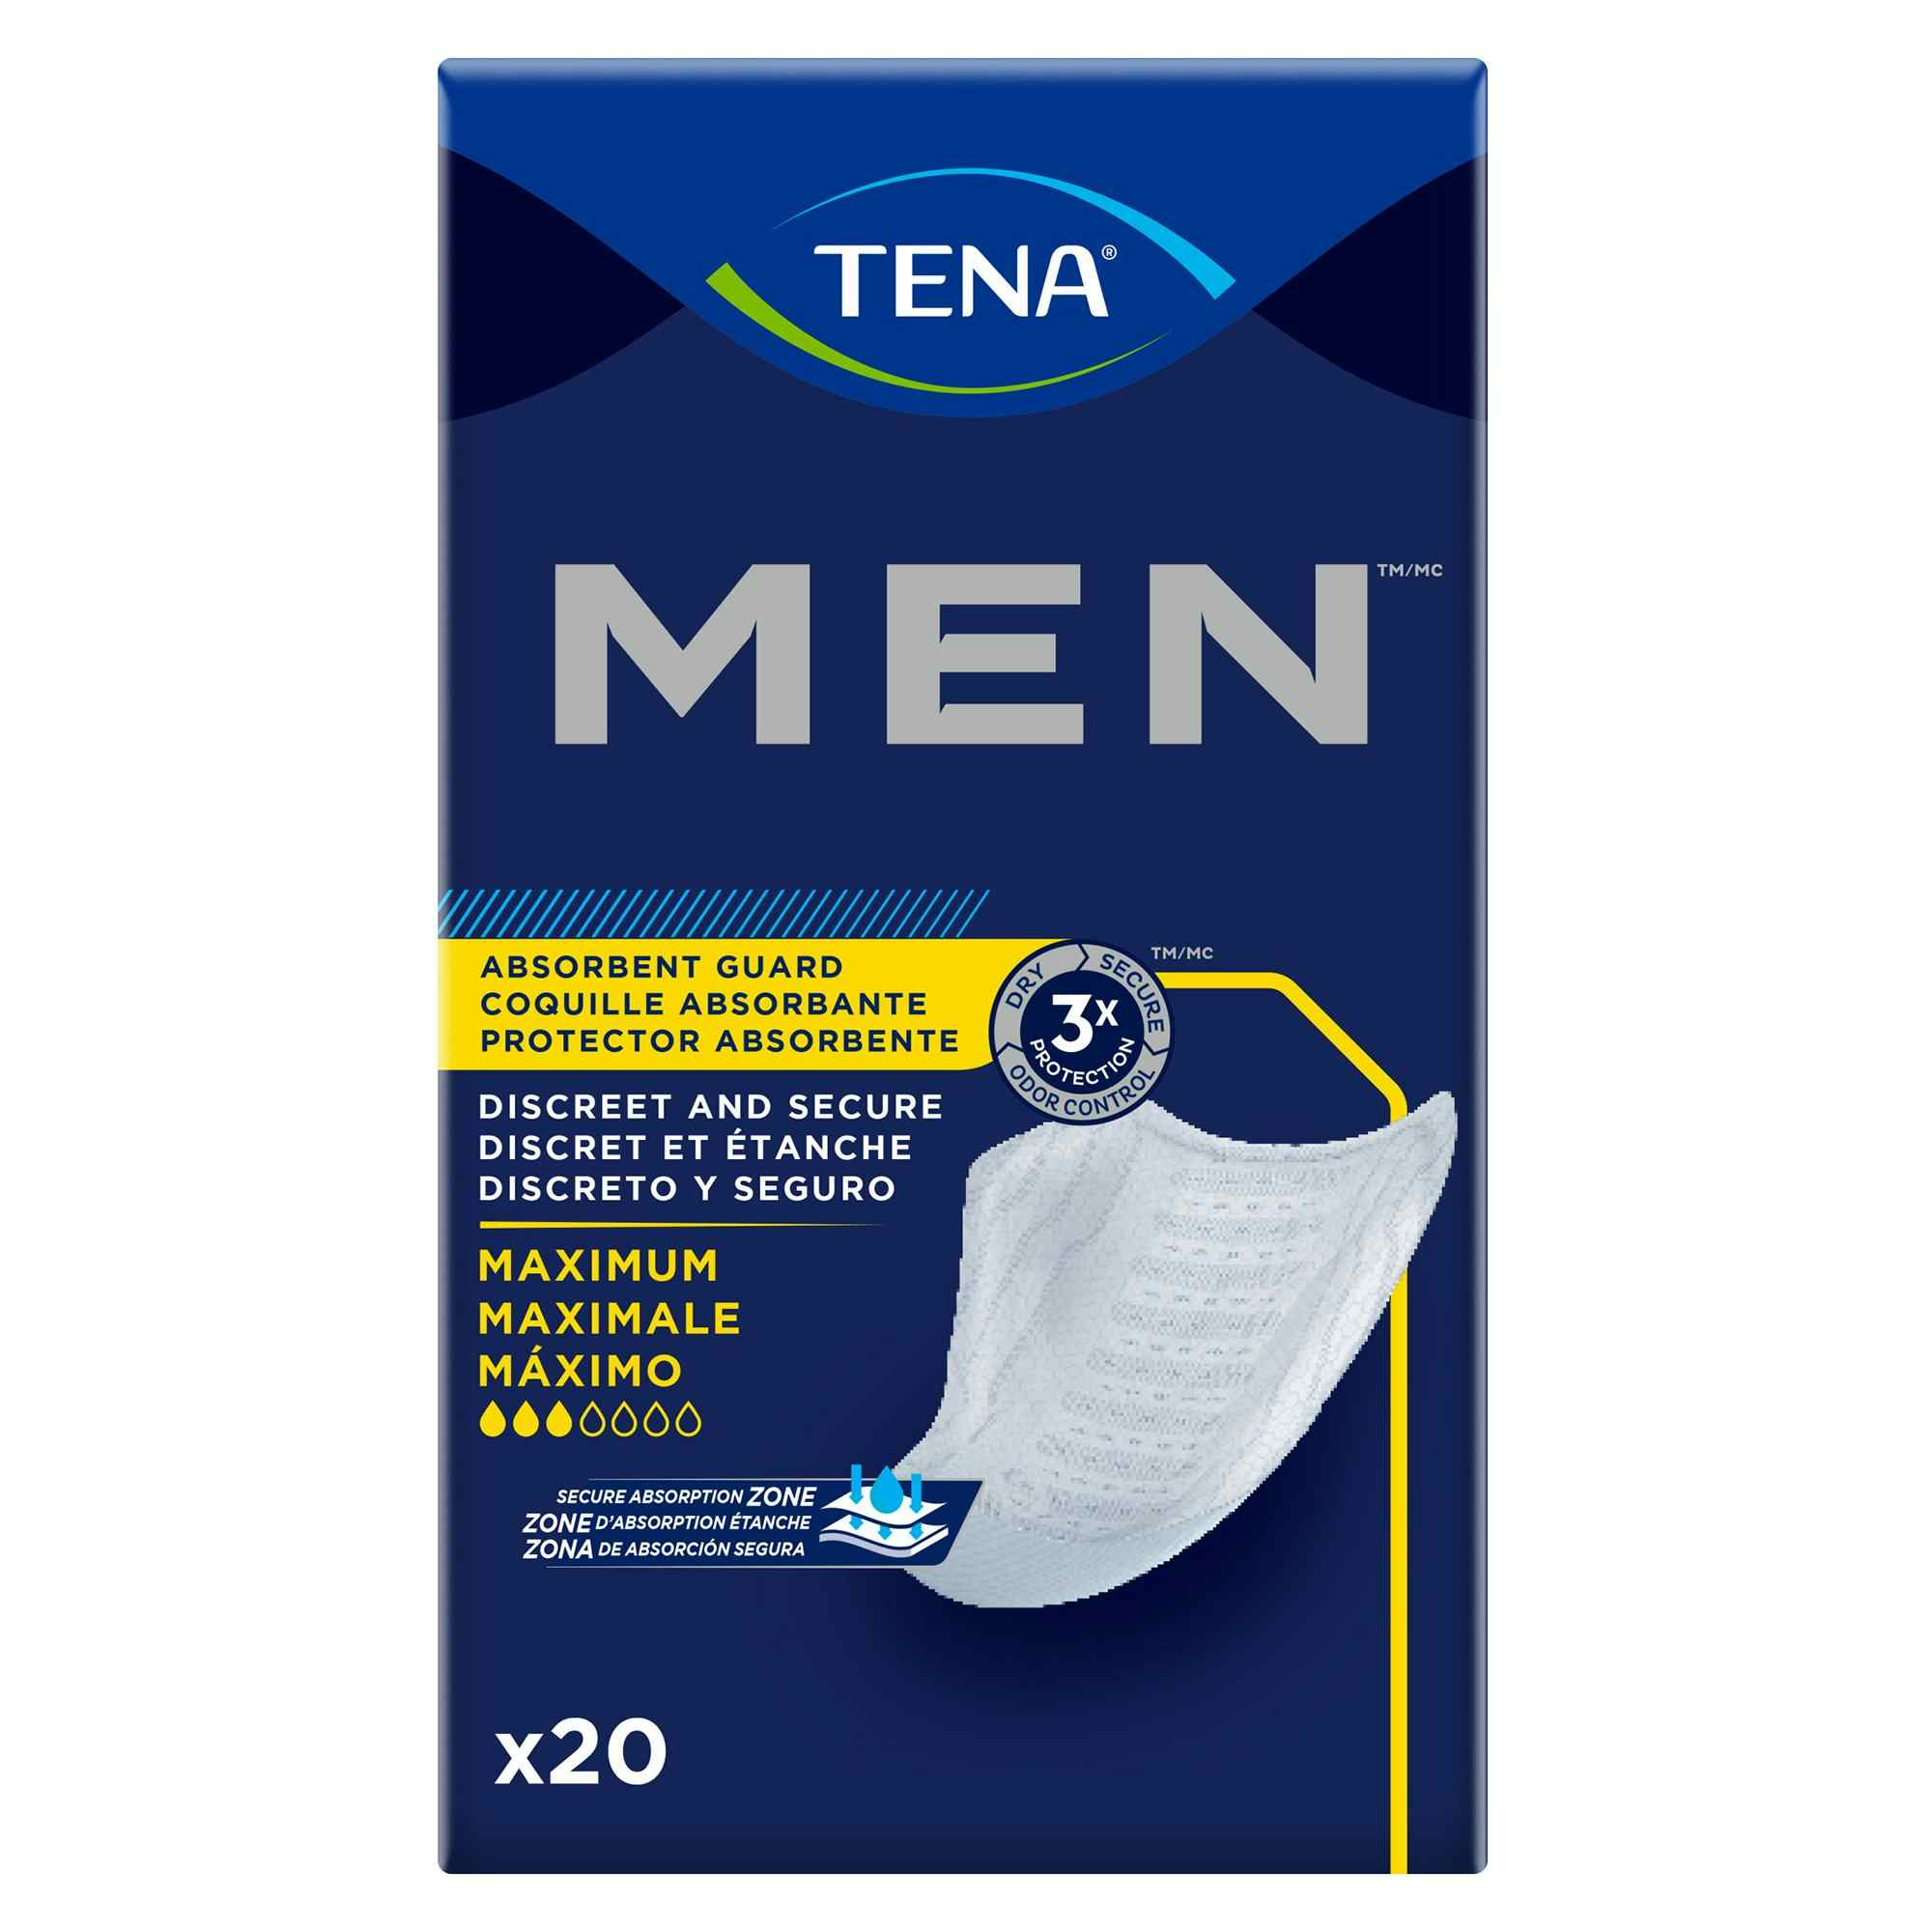 TENA Men Maximum Guard Incontinence Pad